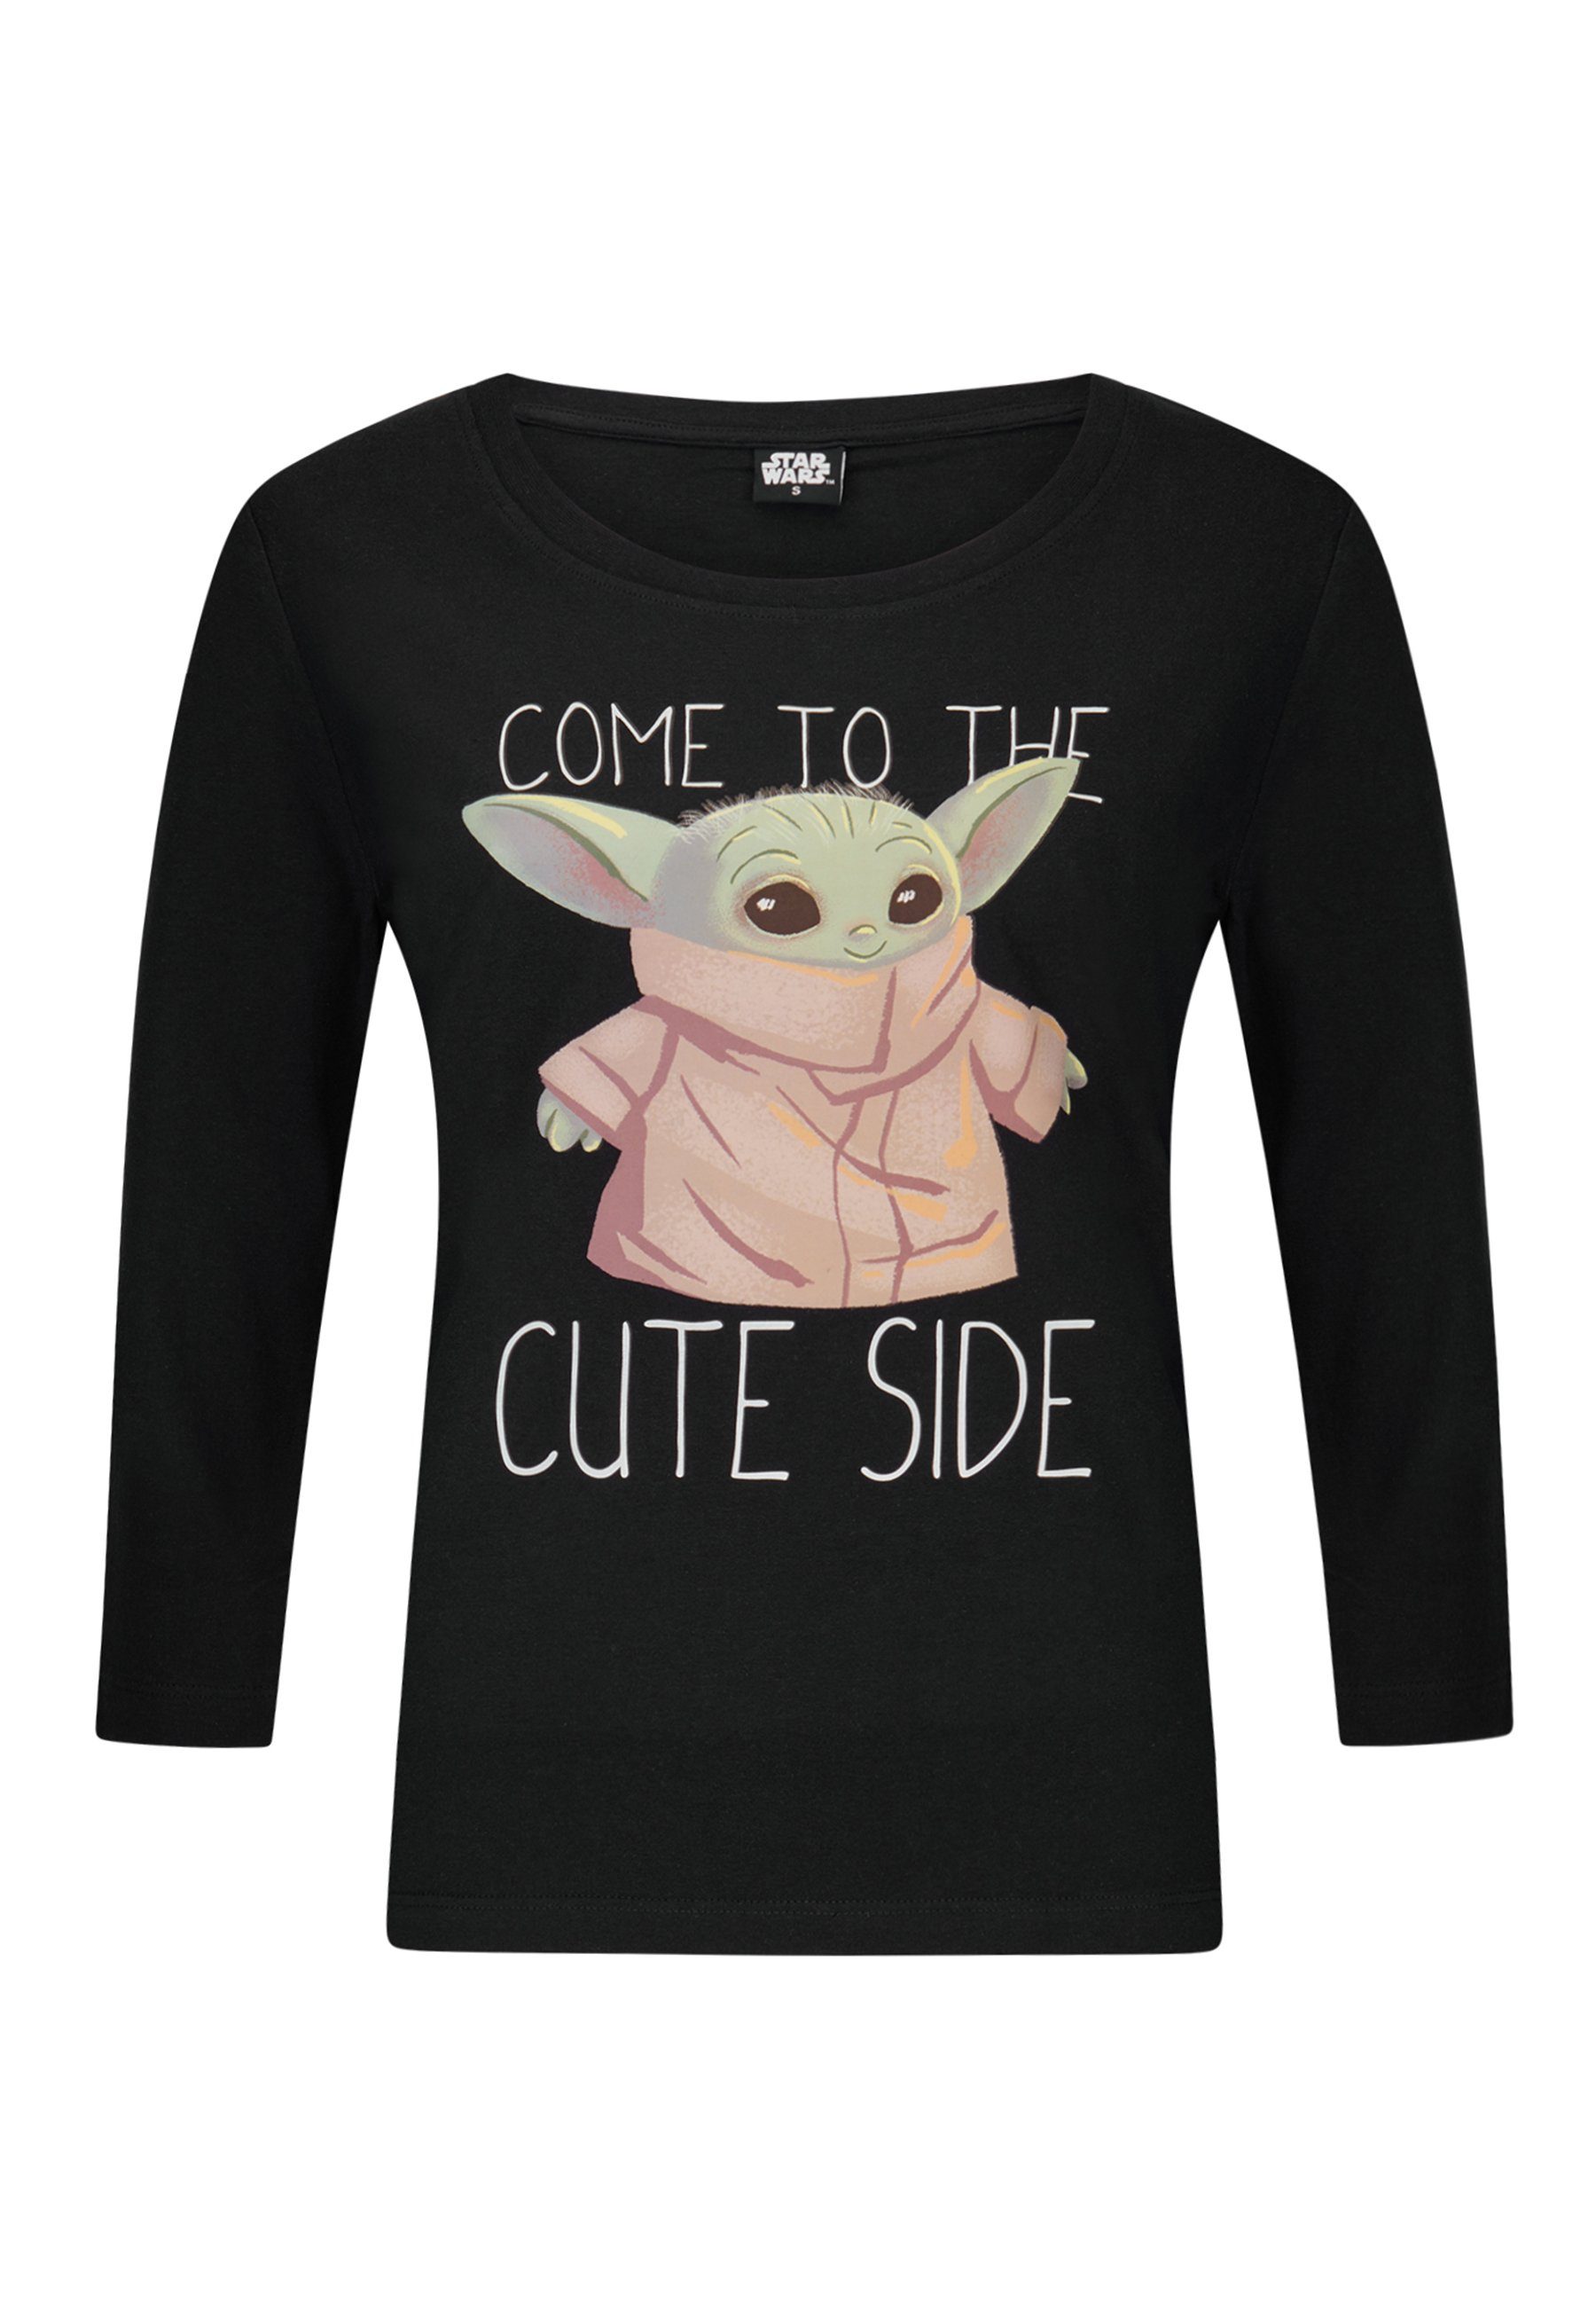 T-Shirt aus ein kurzarm für Star Shirt, angenehmes T-Shirt Yoda Shirt Süßes Star Wars Baumwolle Oberteil Damen Wars